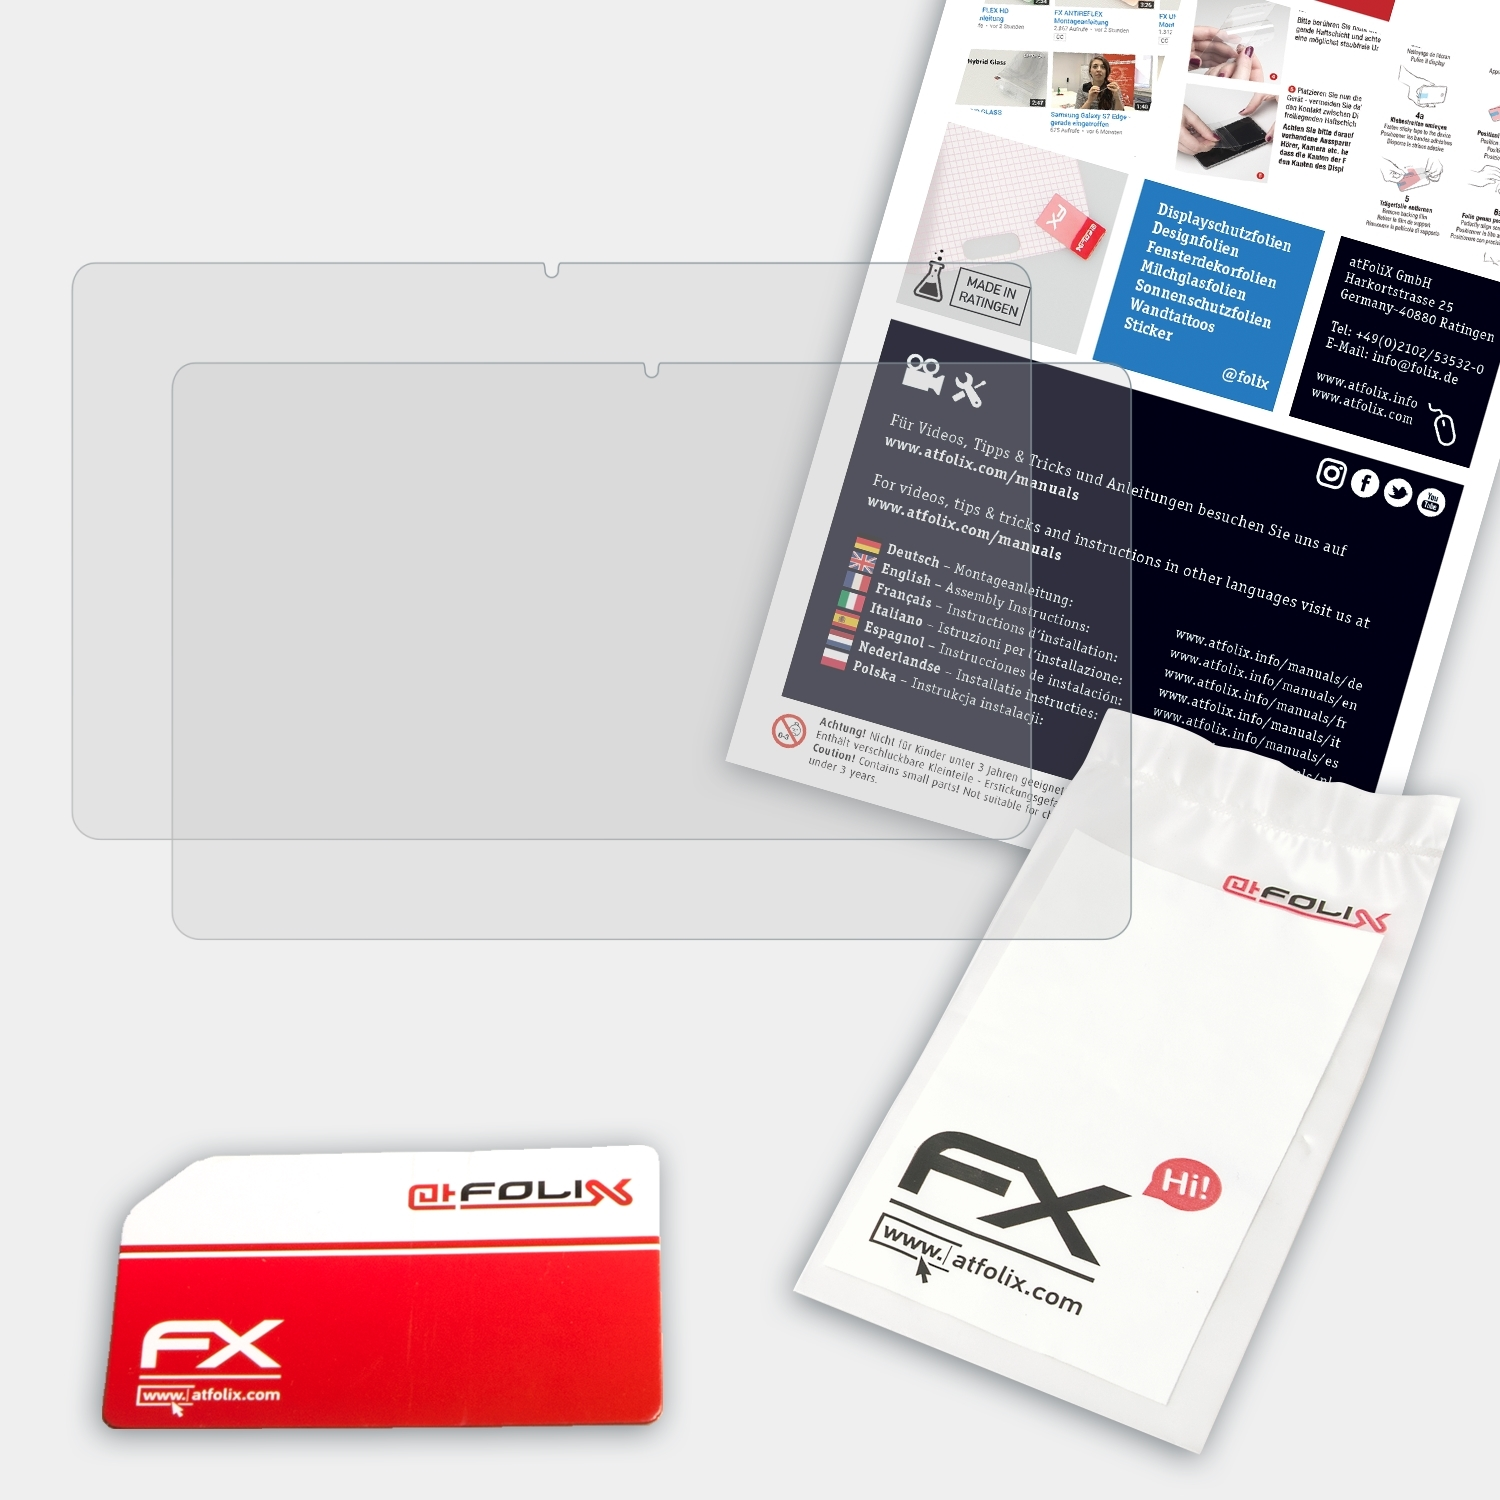 LapBook ATFOLIX Pro) FX-Antireflex Chuwi 2x Displayschutz(für